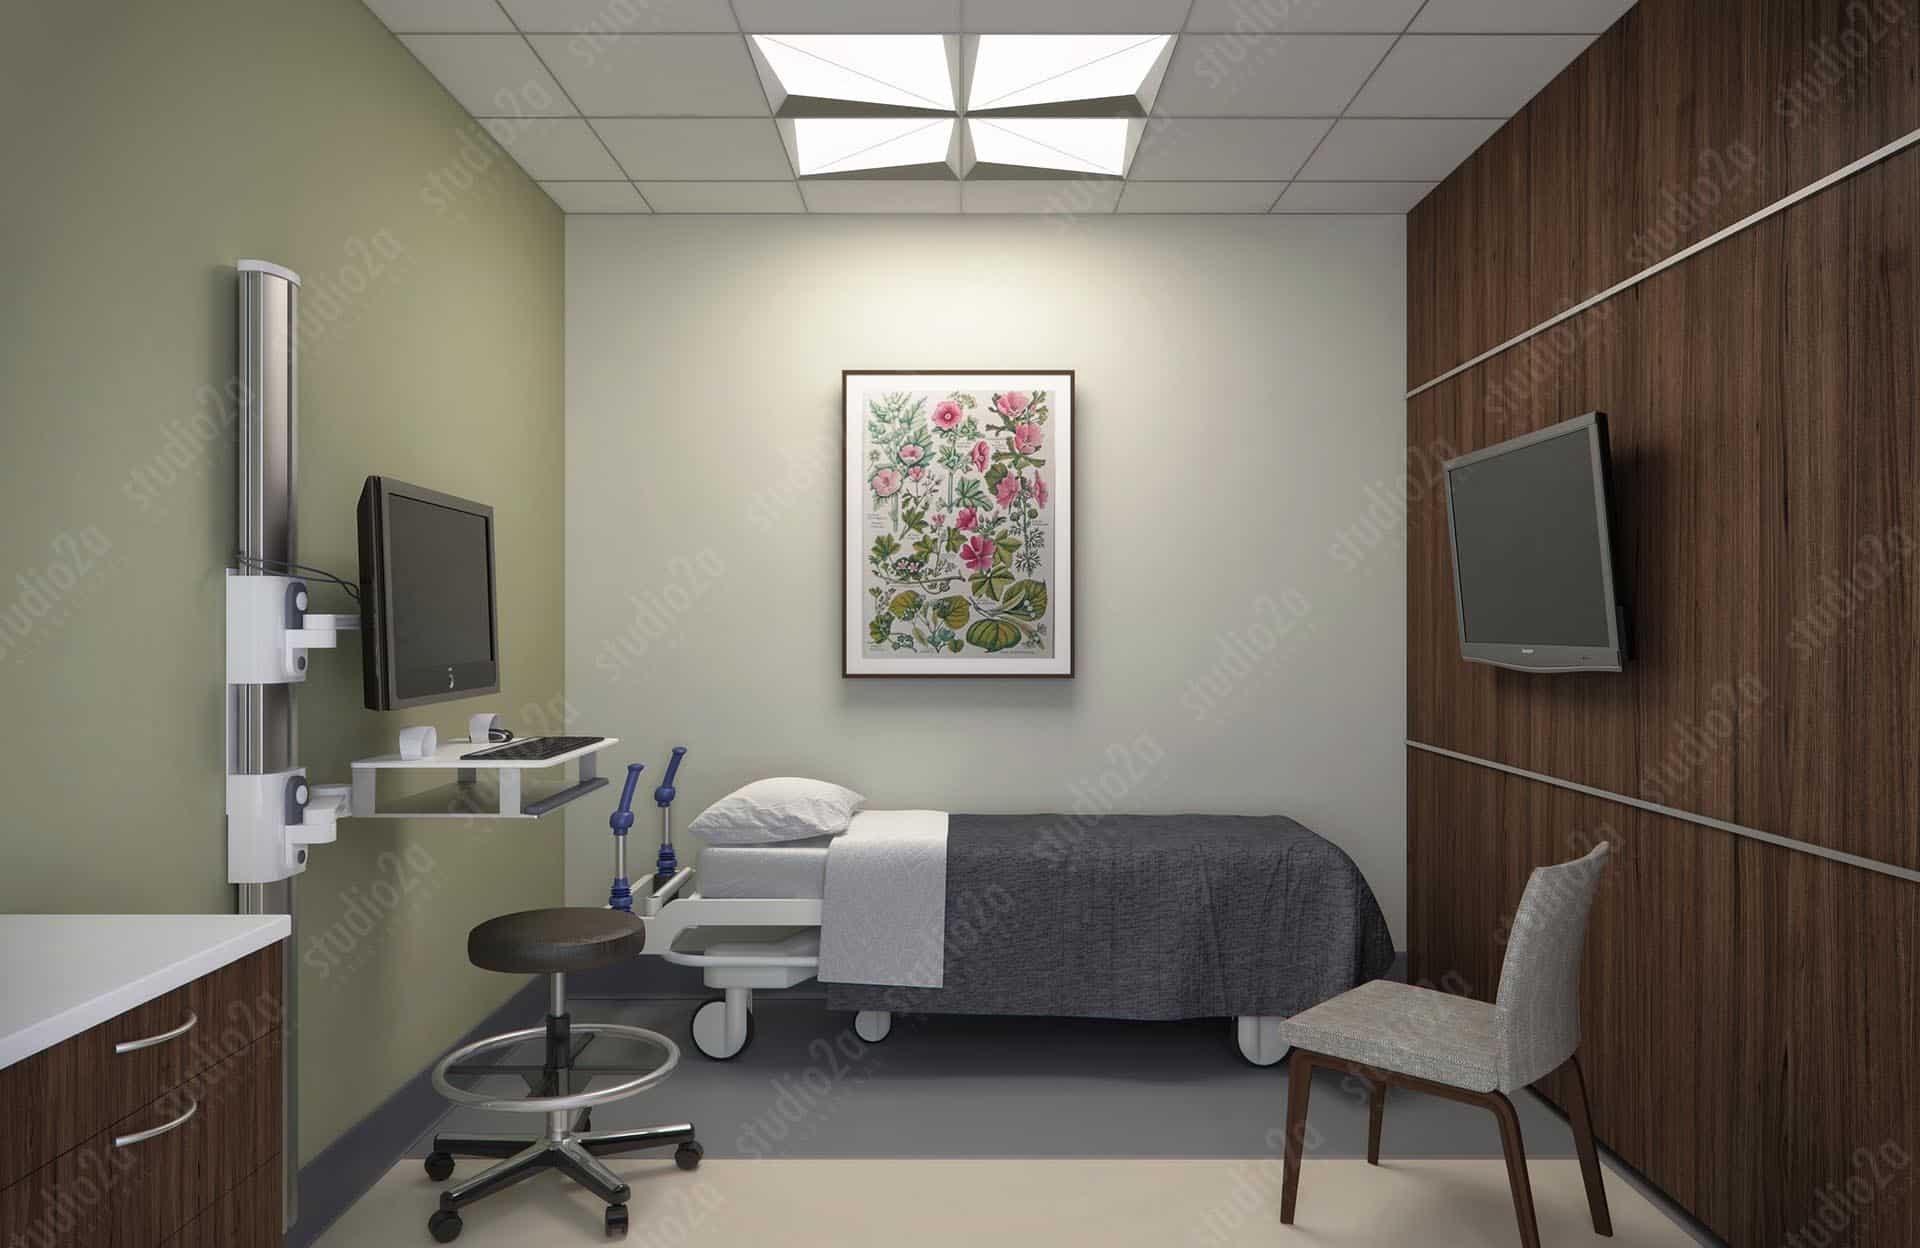 3d rendering interior healthcare focal point lighting fixture